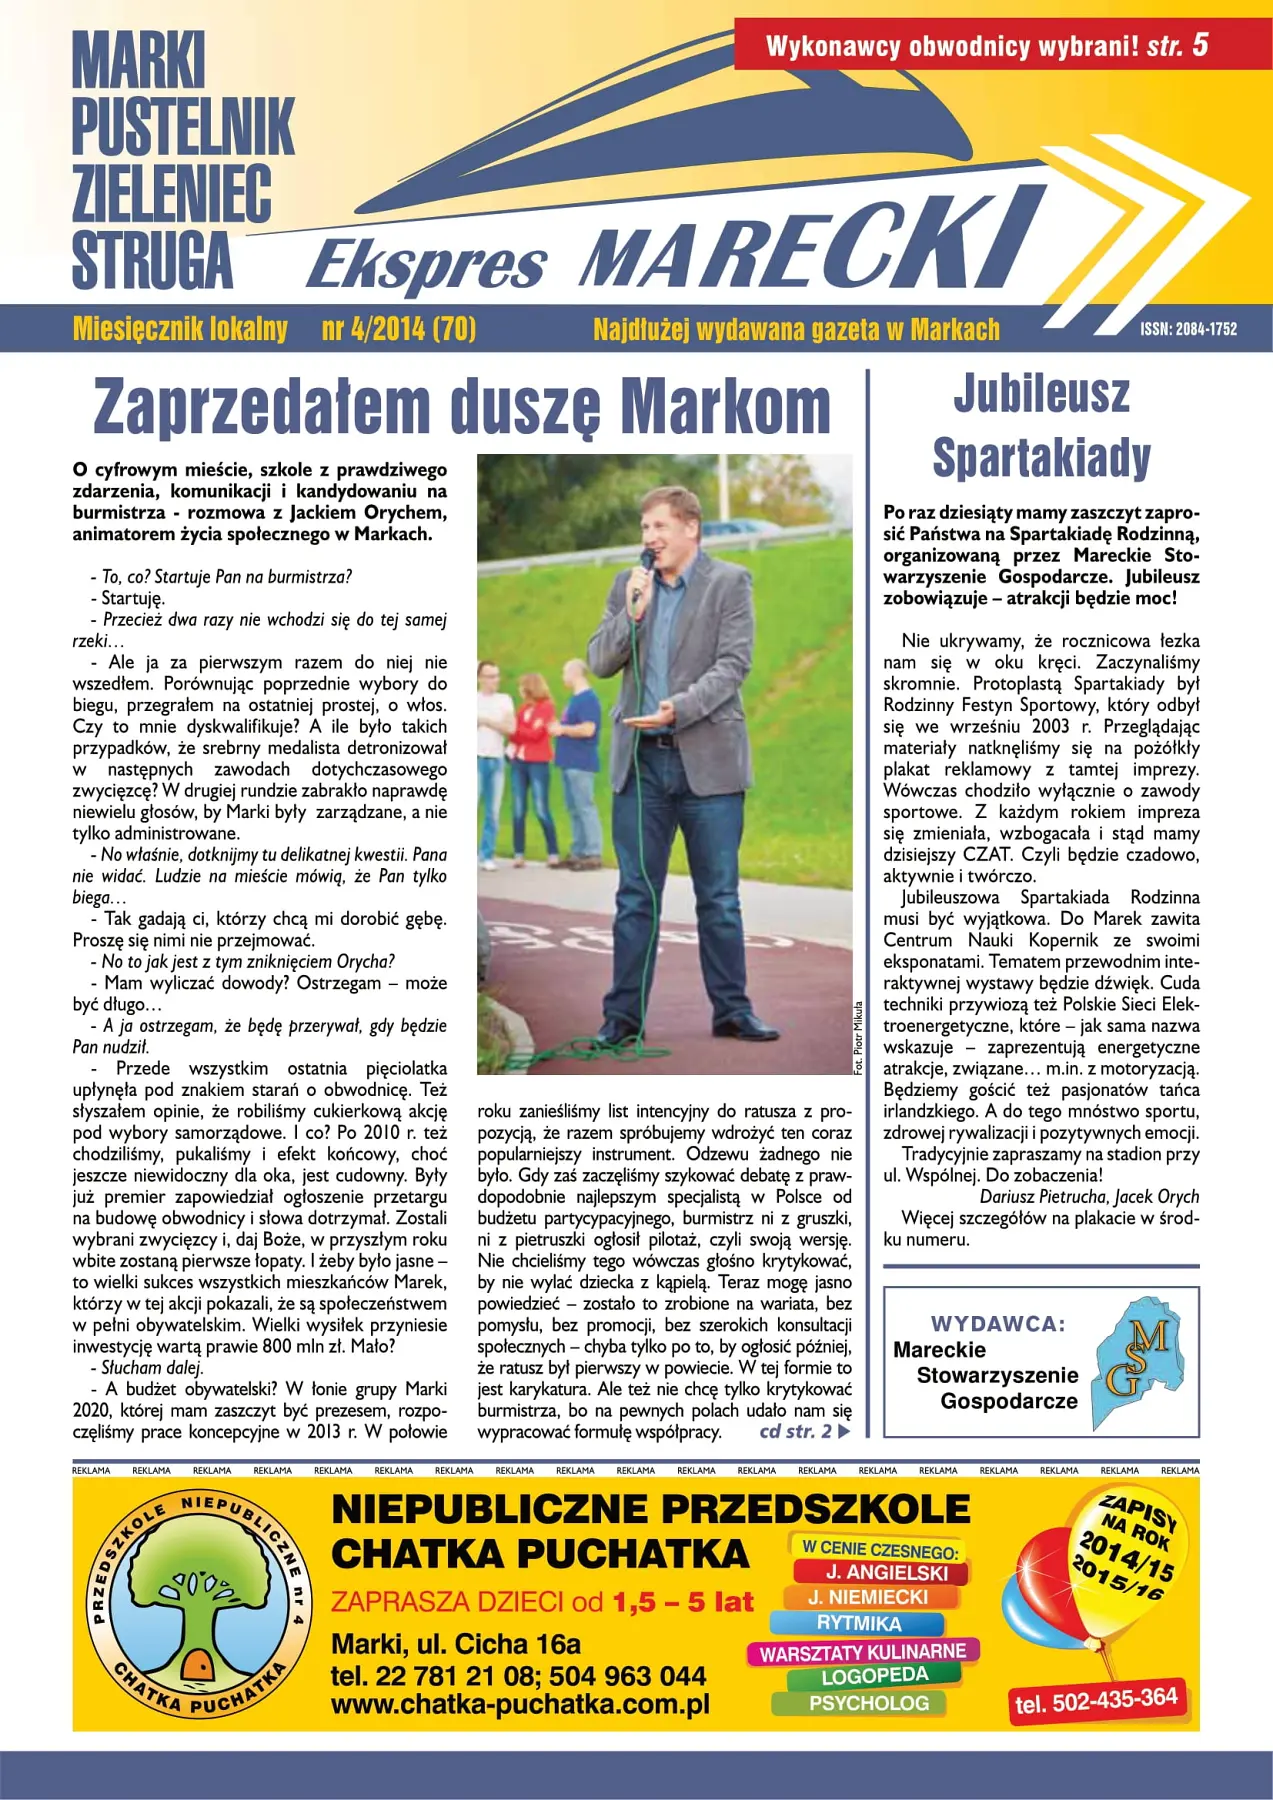 Ekspres Marecki 4/2014 (70)